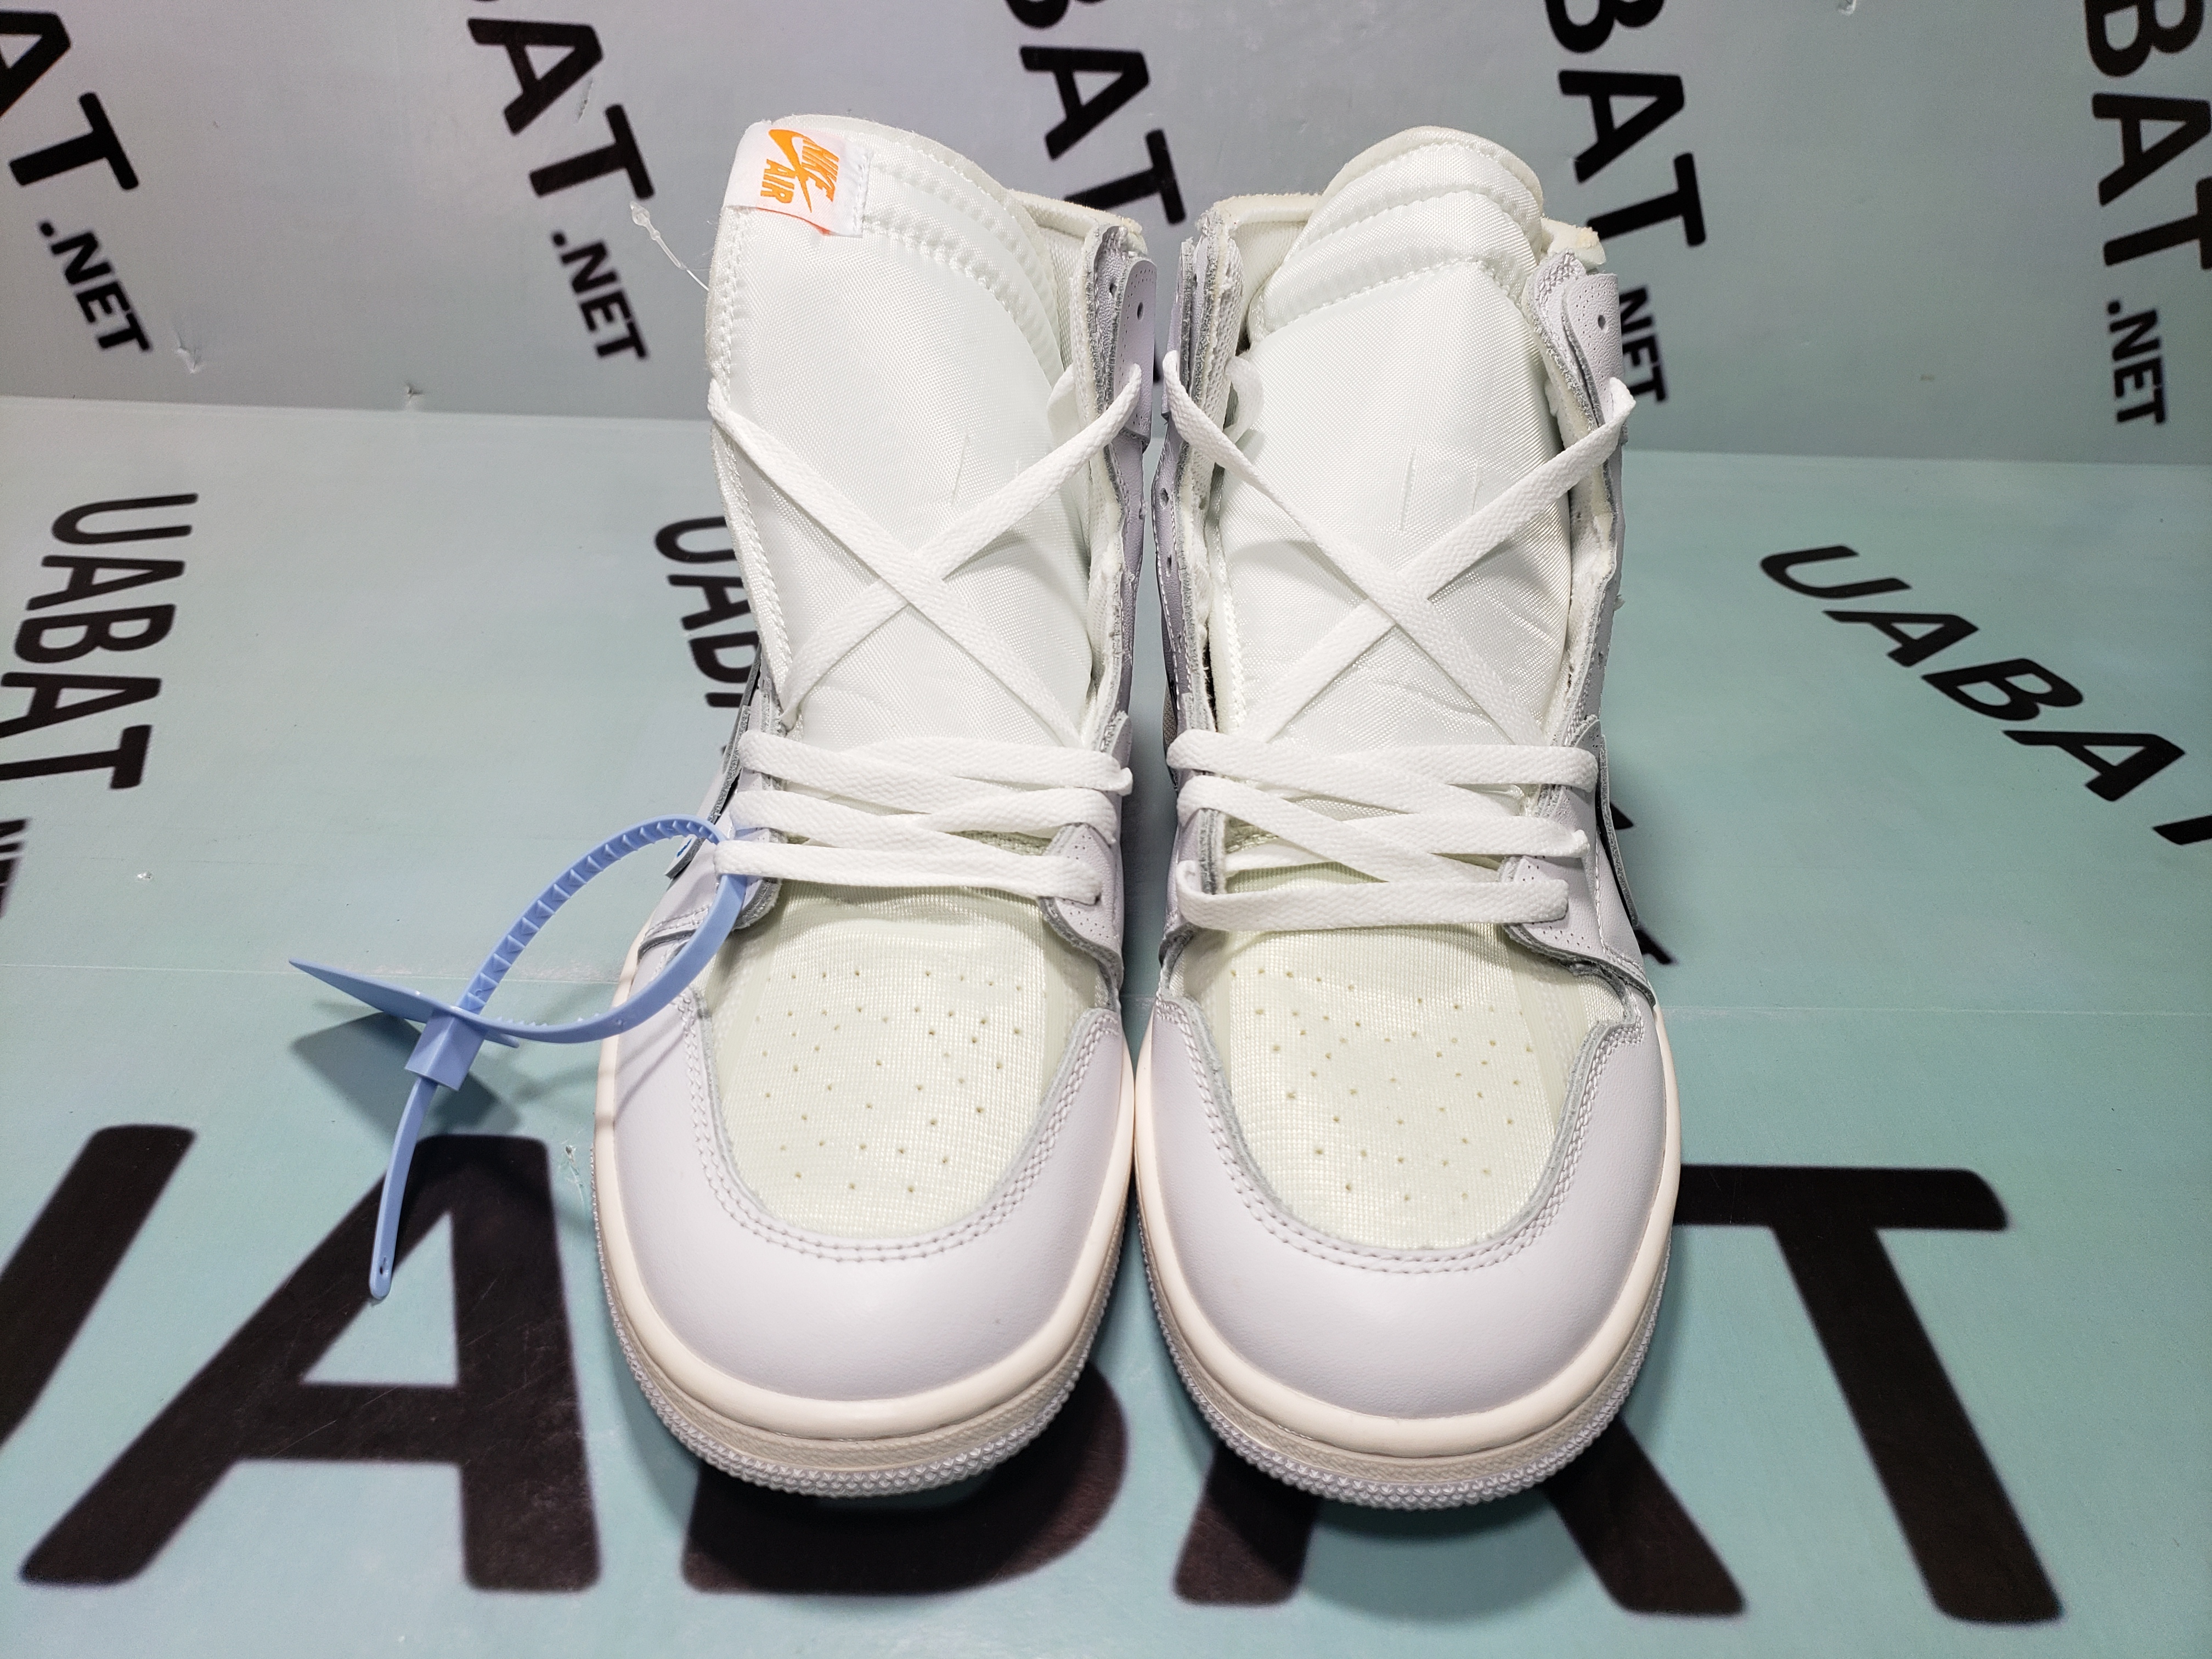 Buy Off-White x Air Jordan 1 Retro High OG 'White' 2018 - AQ0818